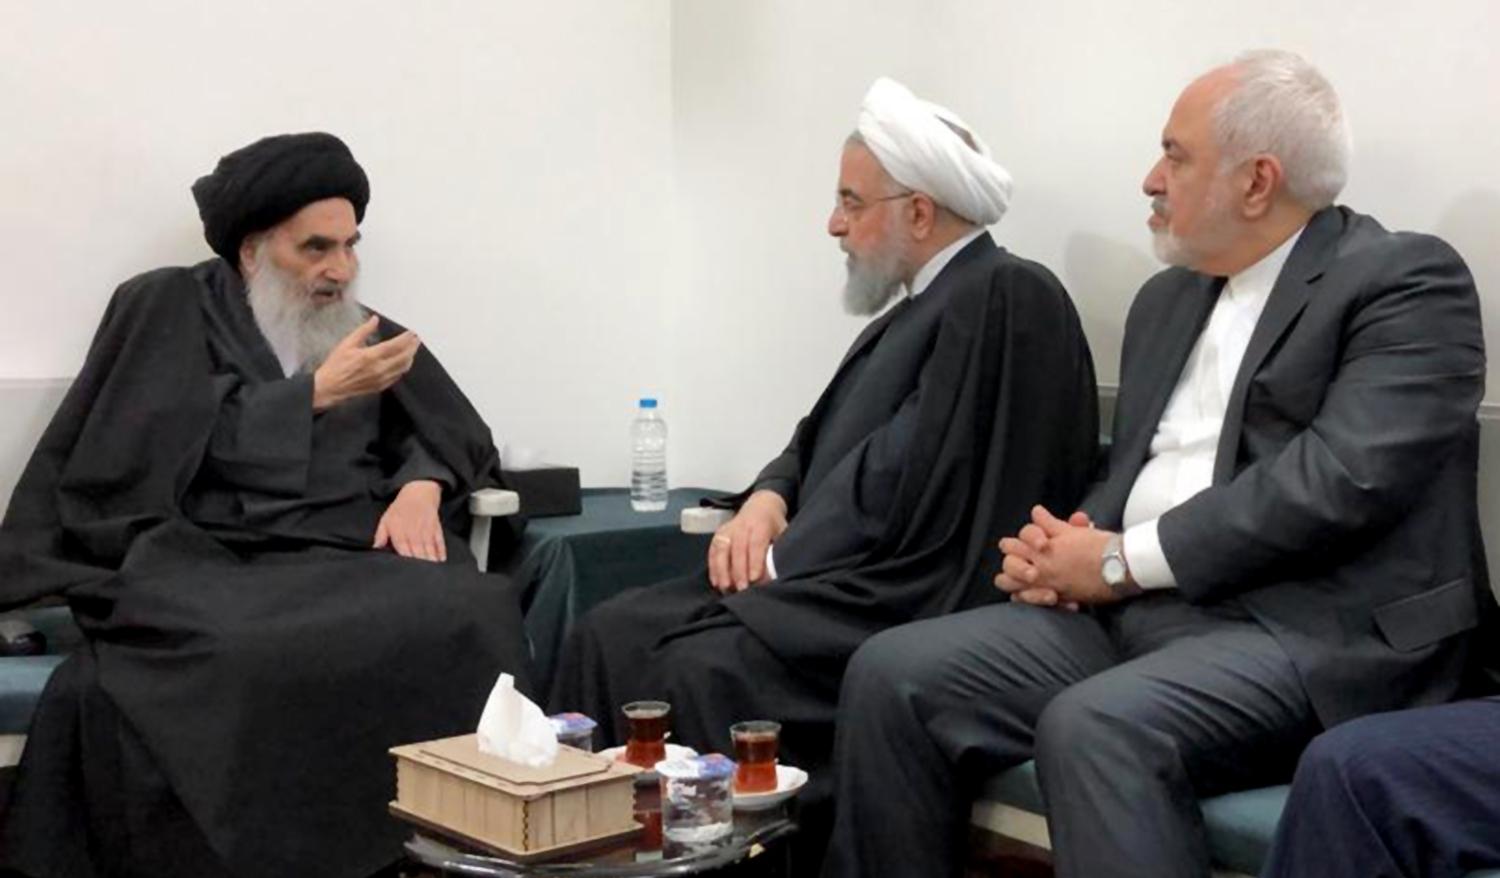 مخطط رجال الدين الإيرانيين لجعل شيعة العراق يكرهون وطنهم